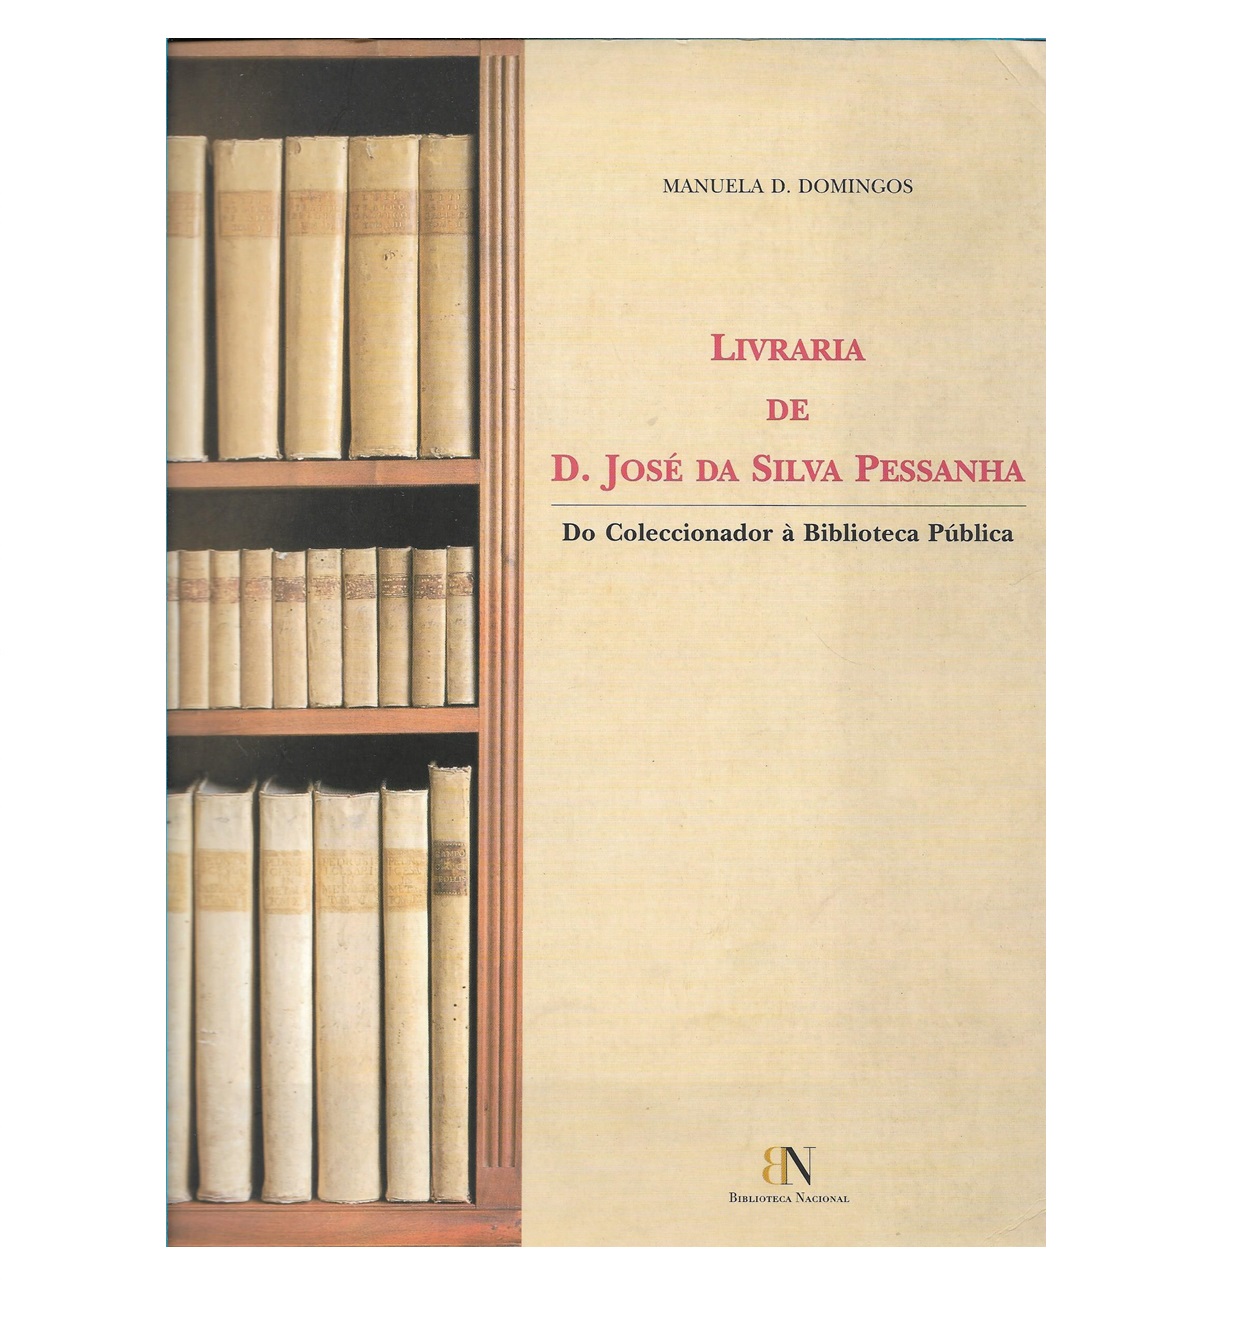 Livraria de D. José da Silva Pessanha